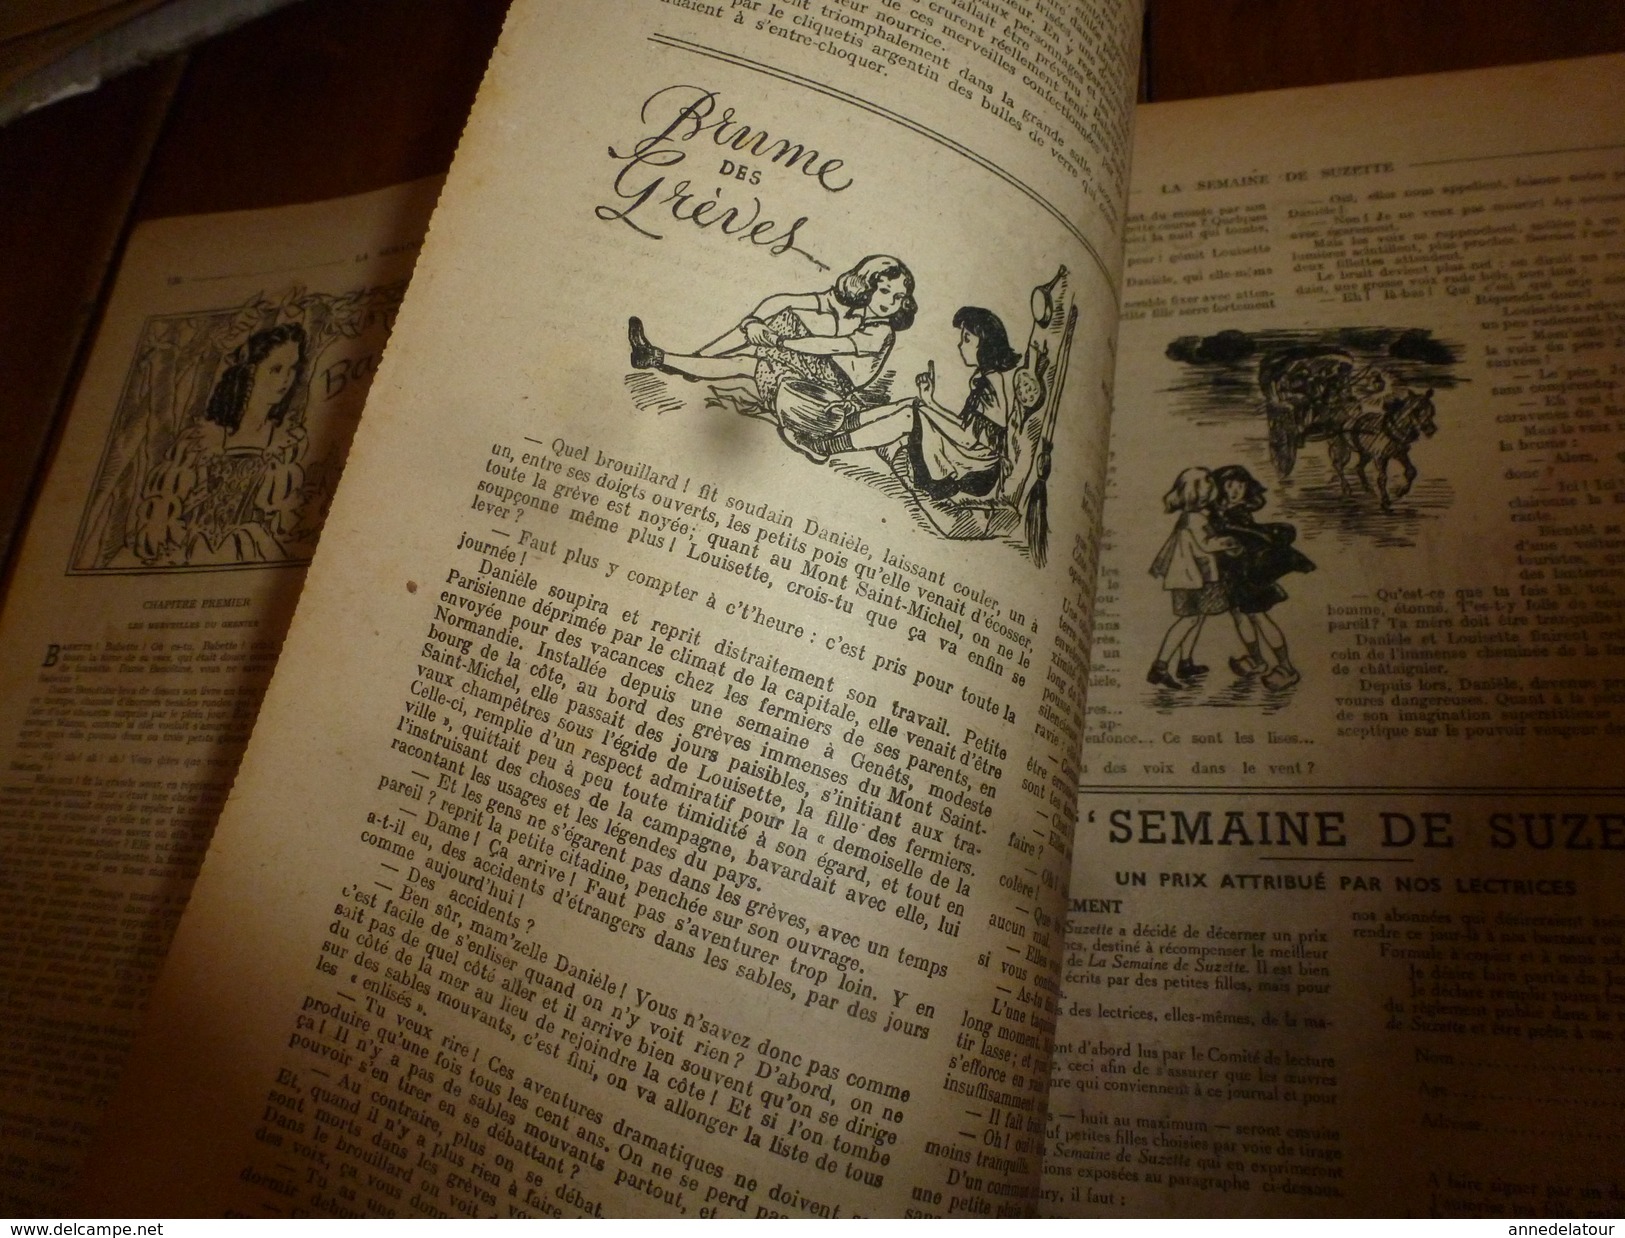 1947 LSDS : Une Autre Variante De L'histoire ----> LE CORBEAU ET LE RENARD ,illustrée Par G. Tisserand; Etc - La Semaine De Suzette